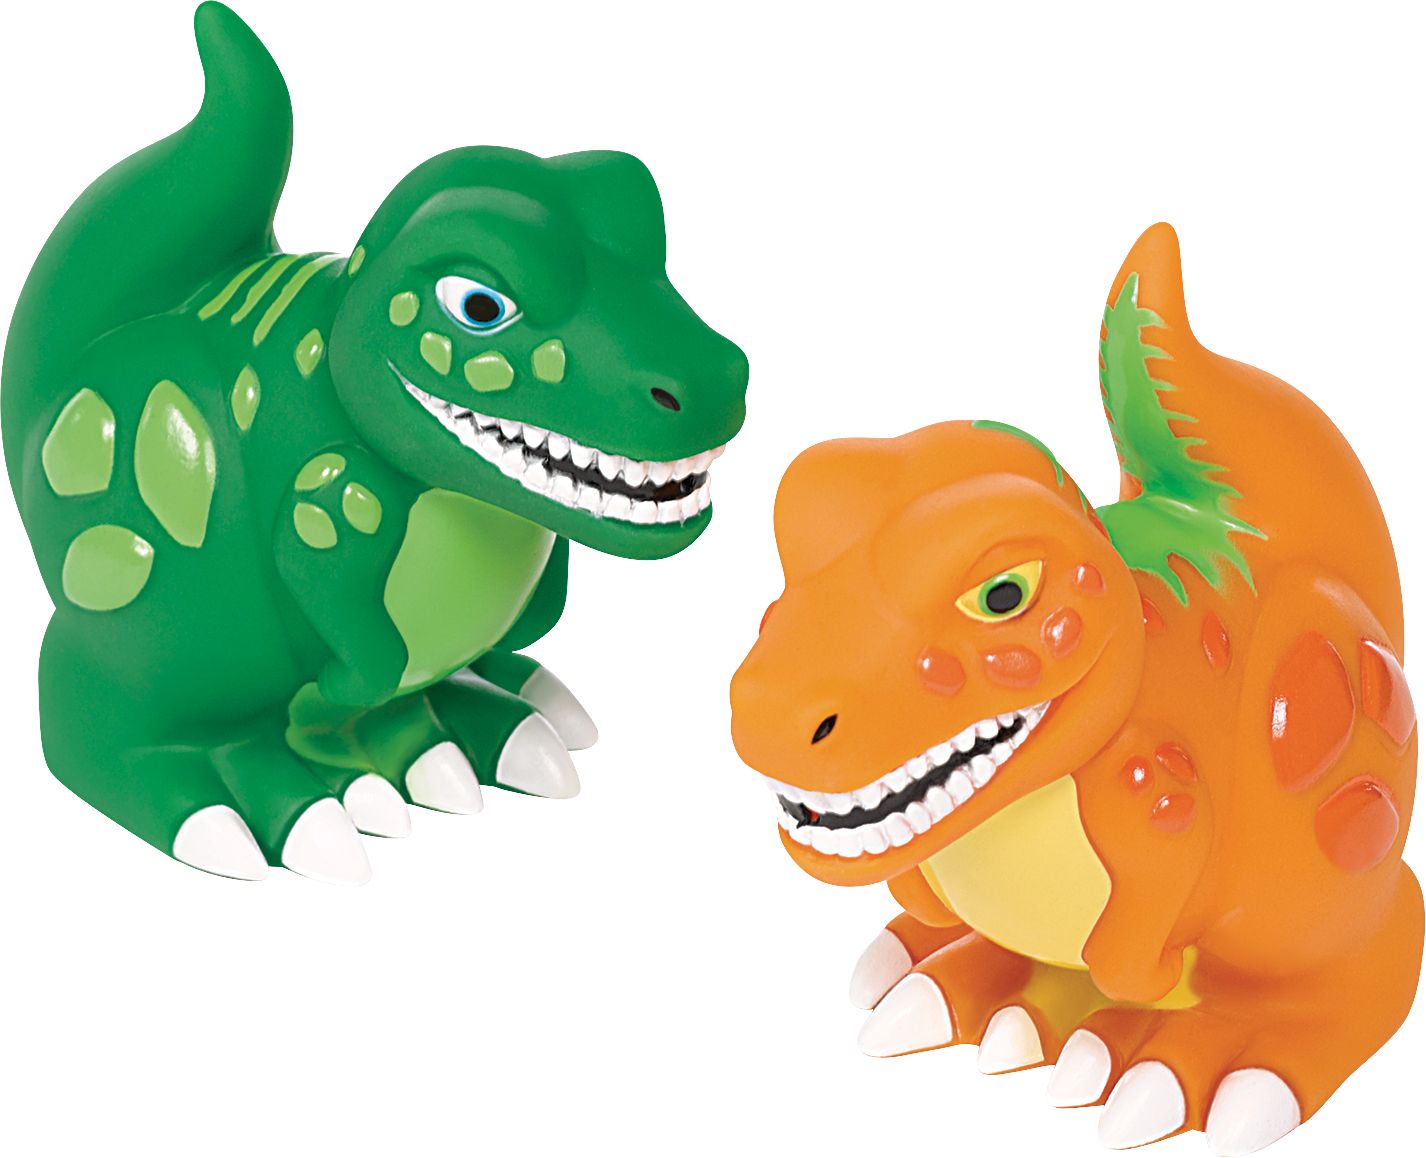 Rangement jouets de bain dinosaure